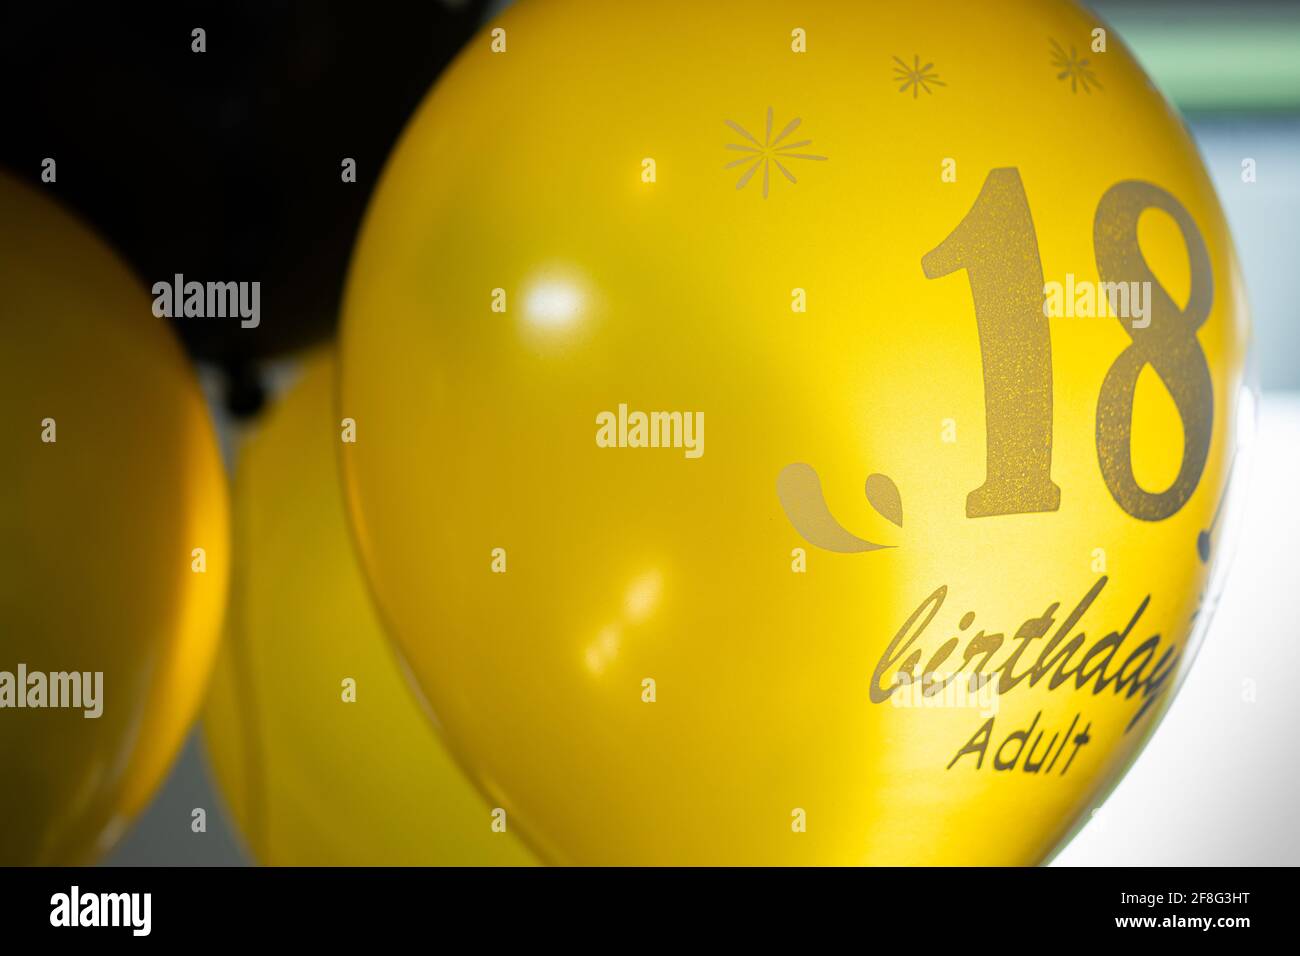 Ballons remplis d'hélium noir et or avec inscription du 18e anniversaire Banque D'Images